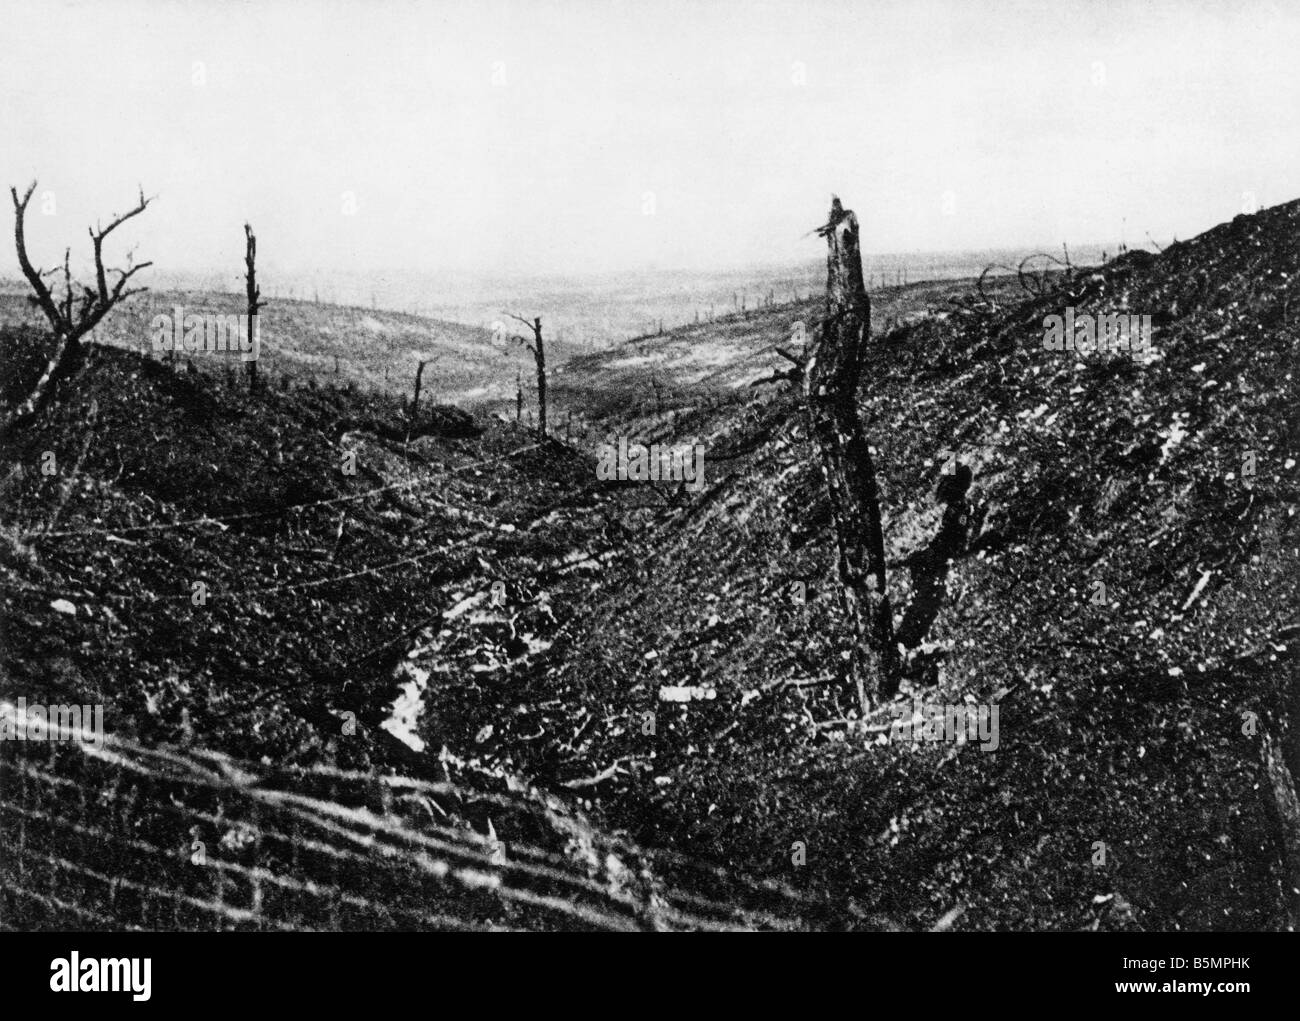 9 1916 10 24 A1 4 e Douaumont Caures forest 1916 Guerra Mondiale 1 1914 18 fronte occidentale battaglia di Verdun 1916 Il distrutto Caures fo Foto Stock